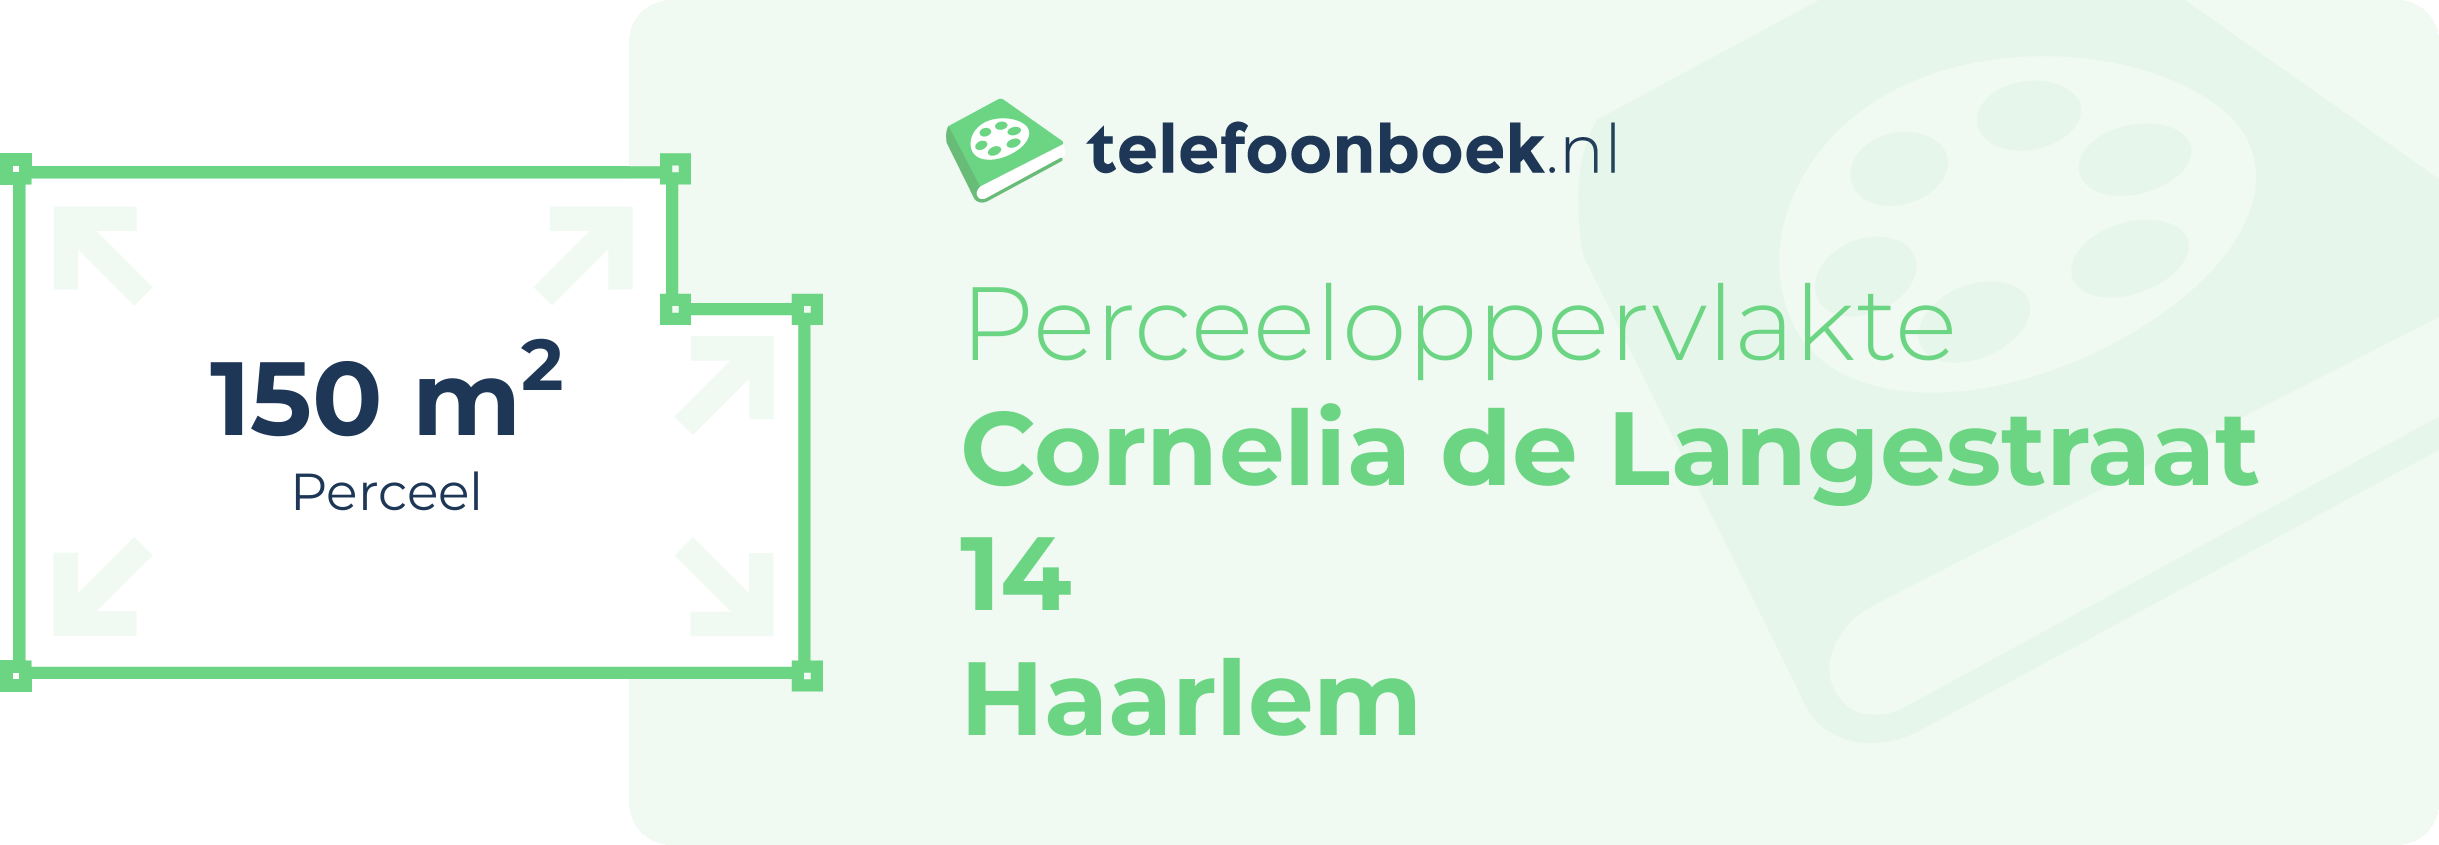 Perceeloppervlakte Cornelia De Langestraat 14 Haarlem